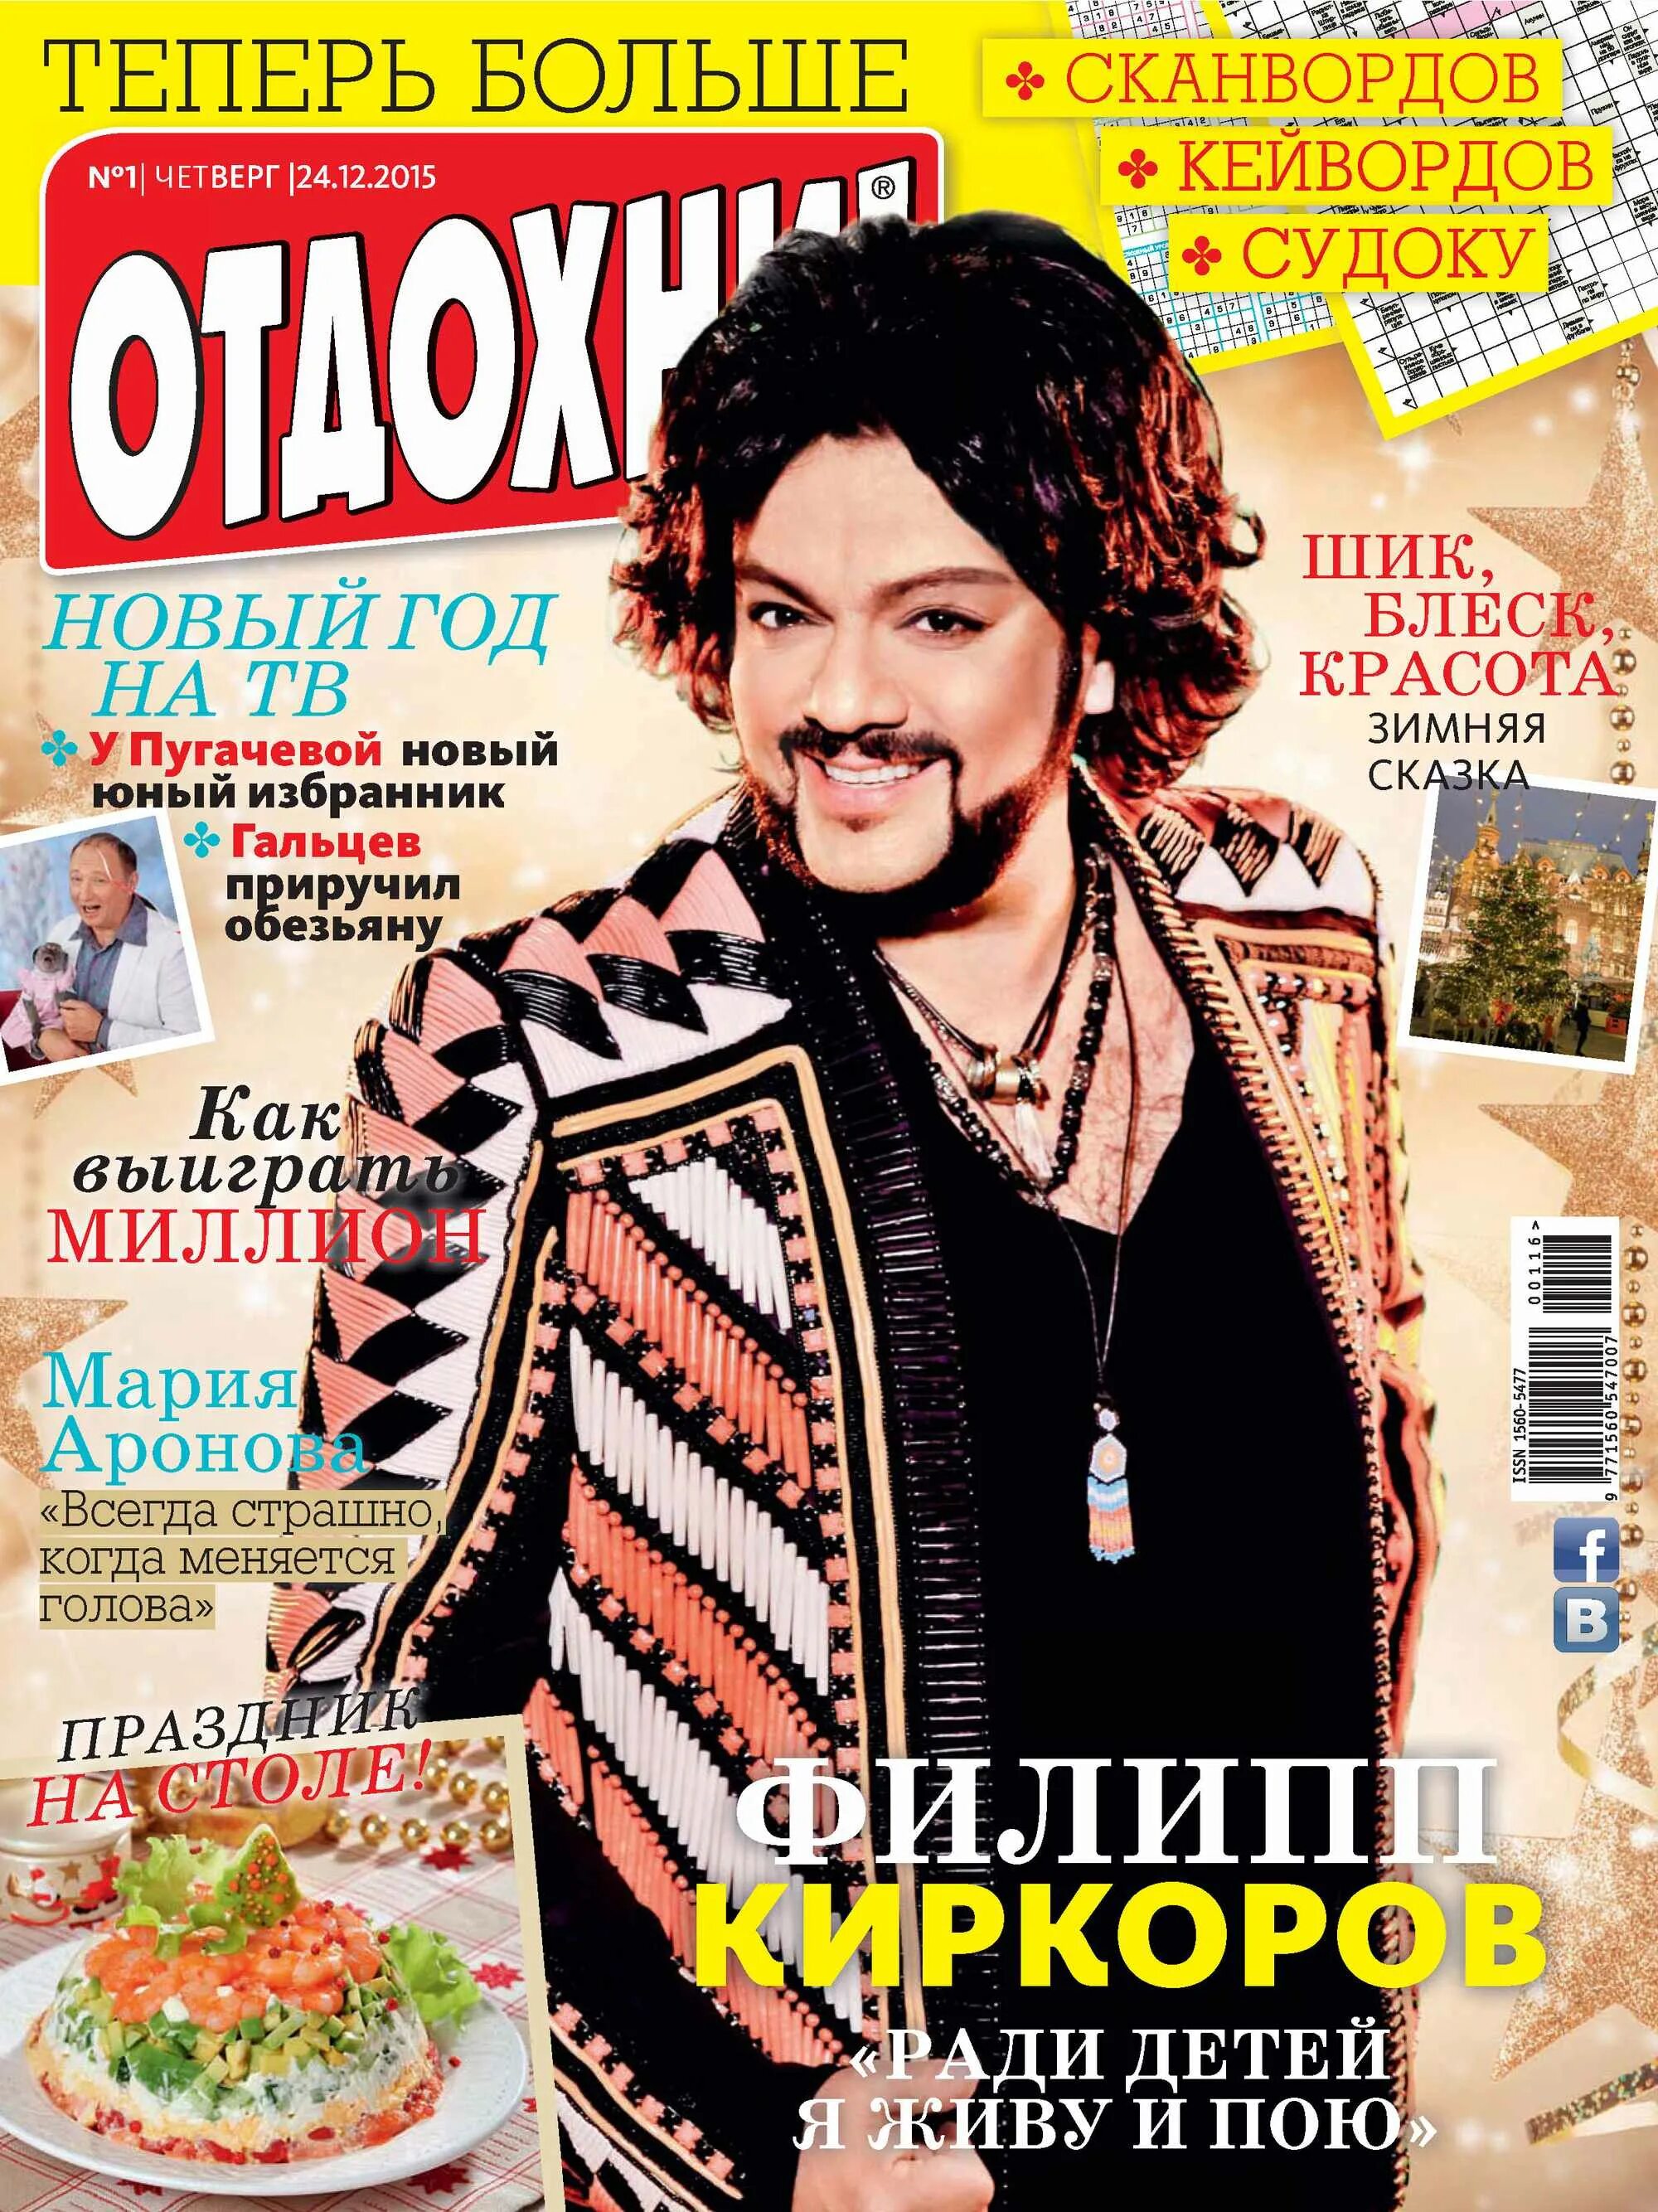 Журнал Отдохни. Обложка журнала Отдохни. Журнал Отдохни 2013 года Киркоров.